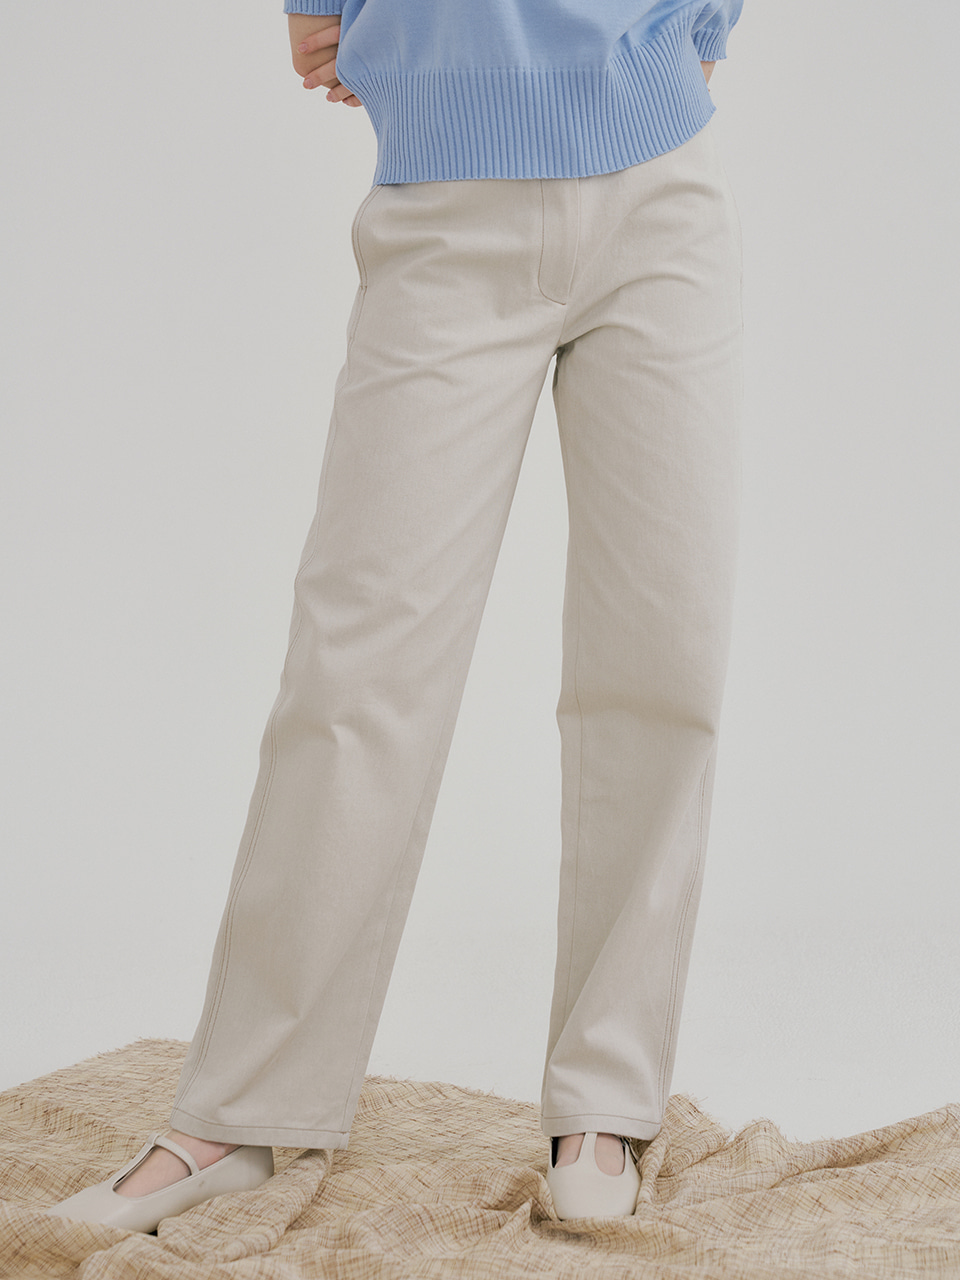 monts 1428 low waist sand cotton pants (khaki beige)